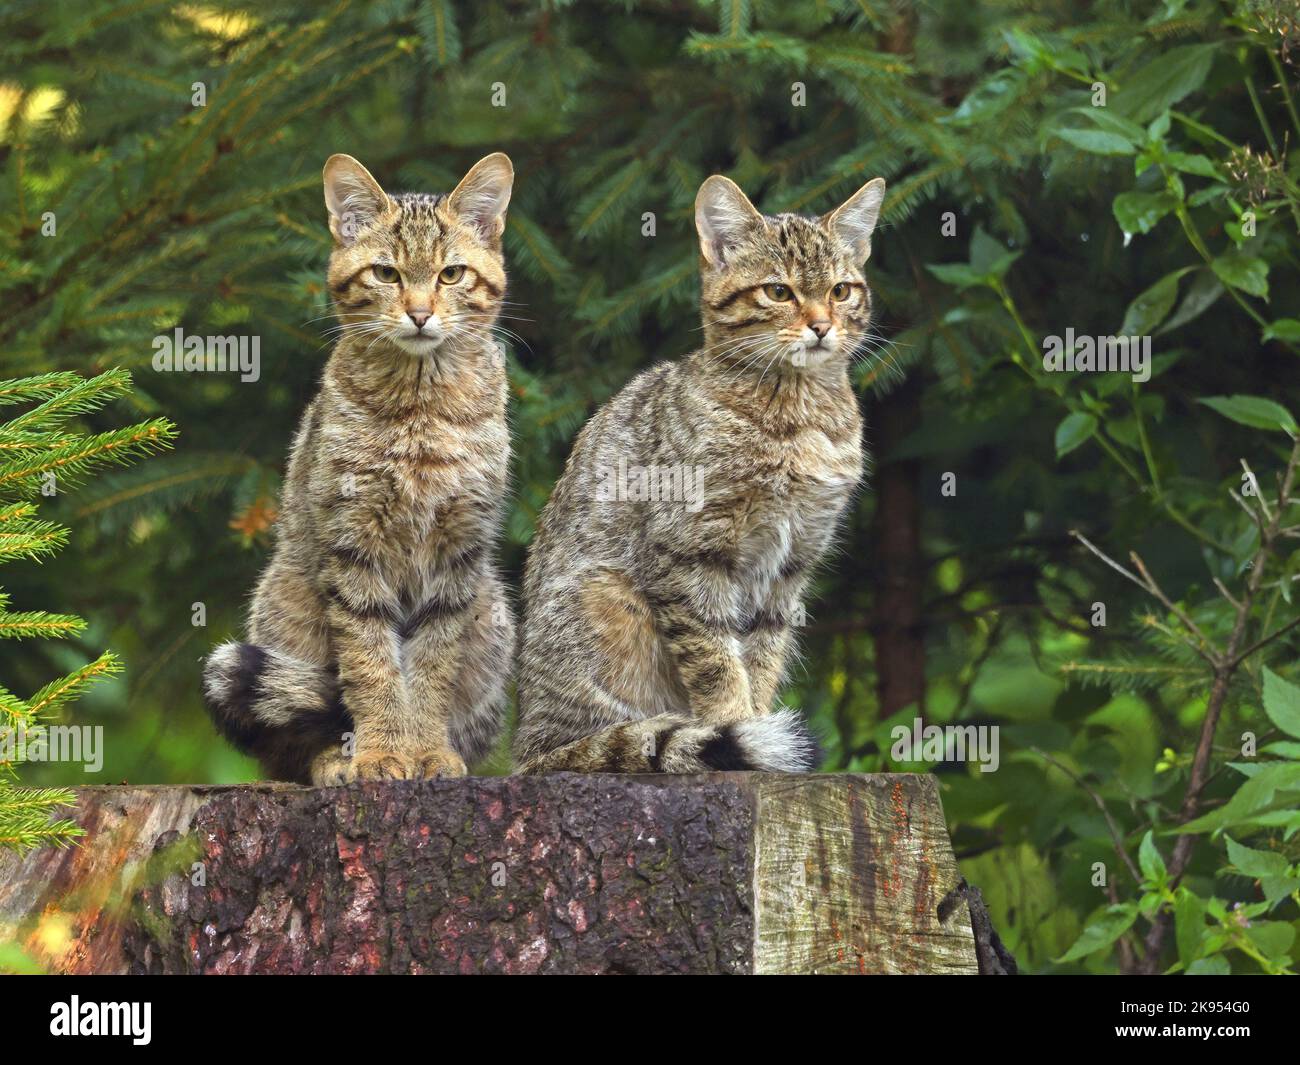 Gatto selvatico europeo, gatto selvatico della foresta (Felis silvestris silvestris), due gatti selvatici giovani siedono su un serpente dell'albero, Germania Foto Stock